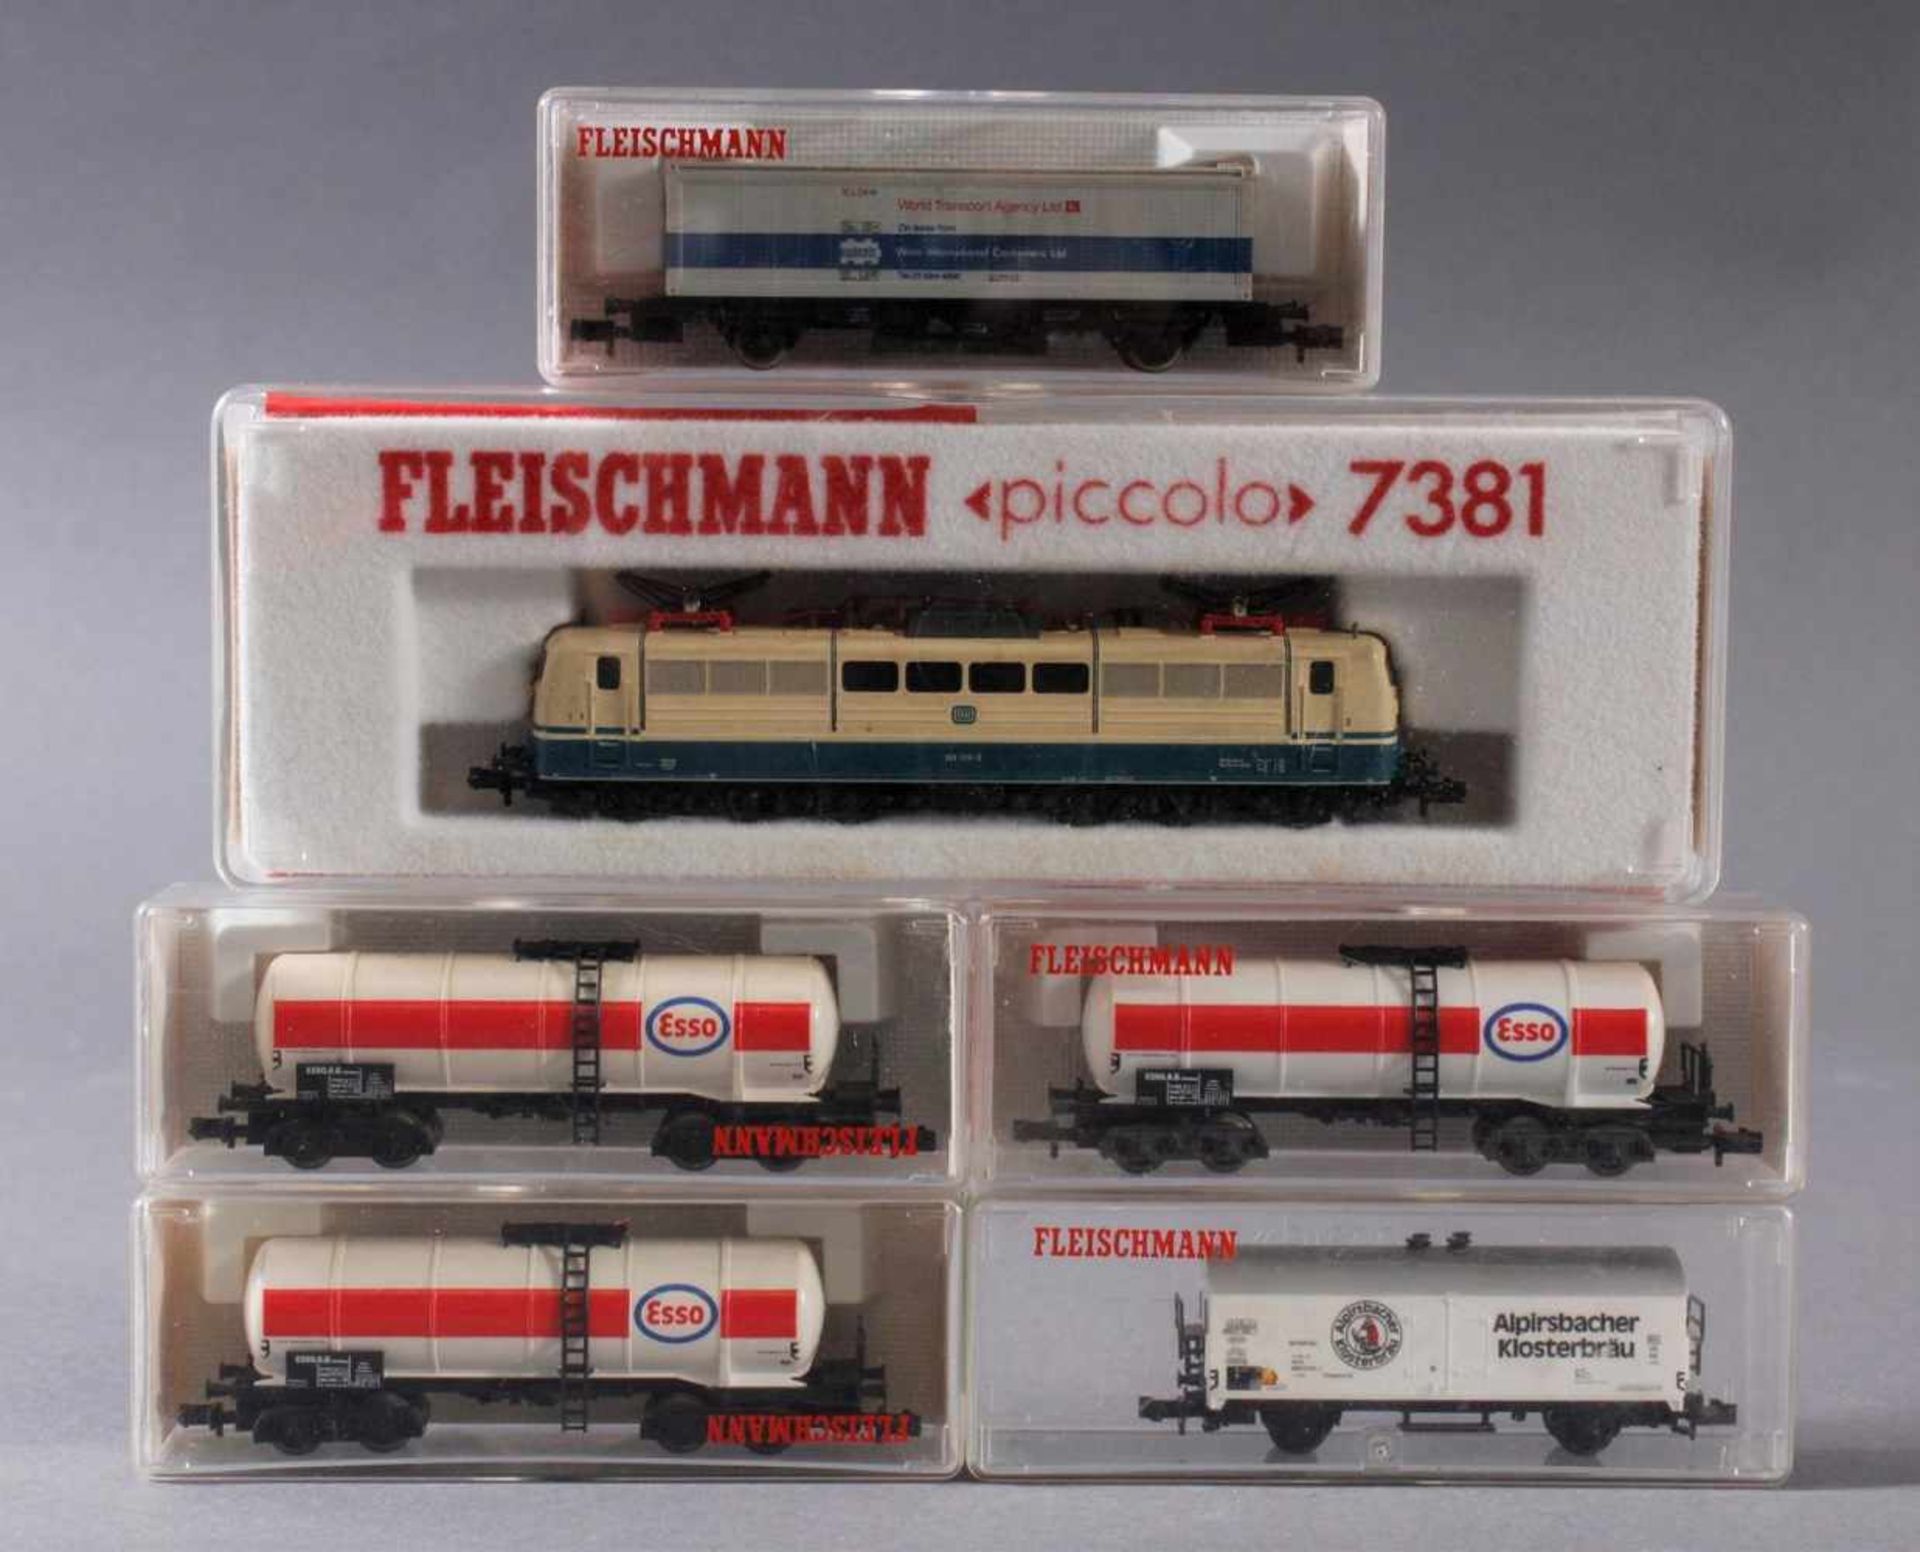 Fleischmann E-Lok 7381 mit 5 GüterwaggonsModellnummer der Waggons, 8480, 8483, 8481, 8245 und